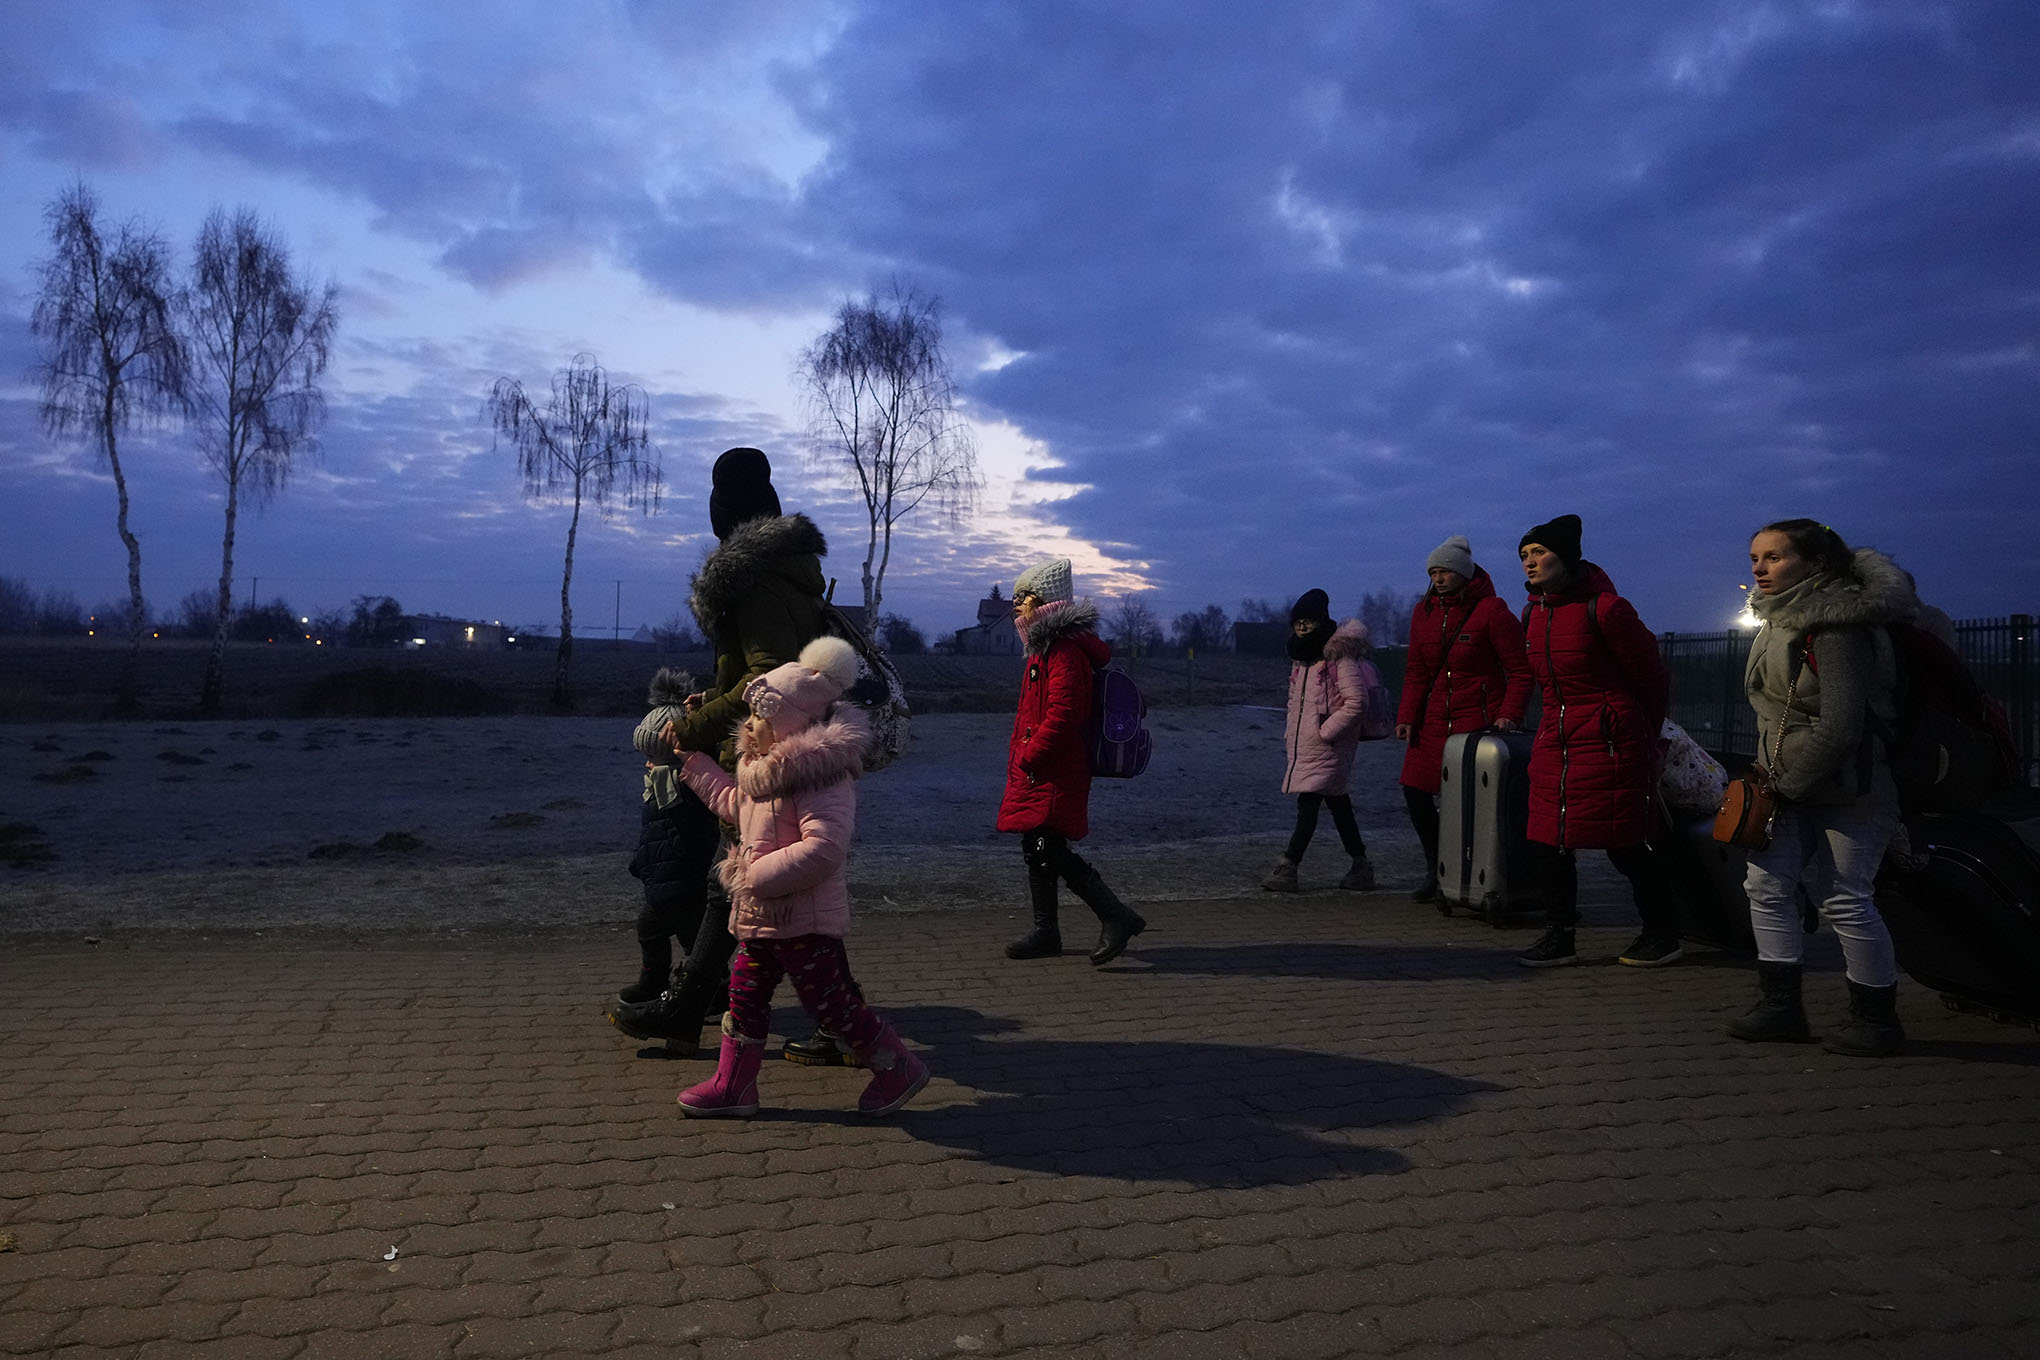 War in Ukraine, Single-family zoning, Seeking show ideas